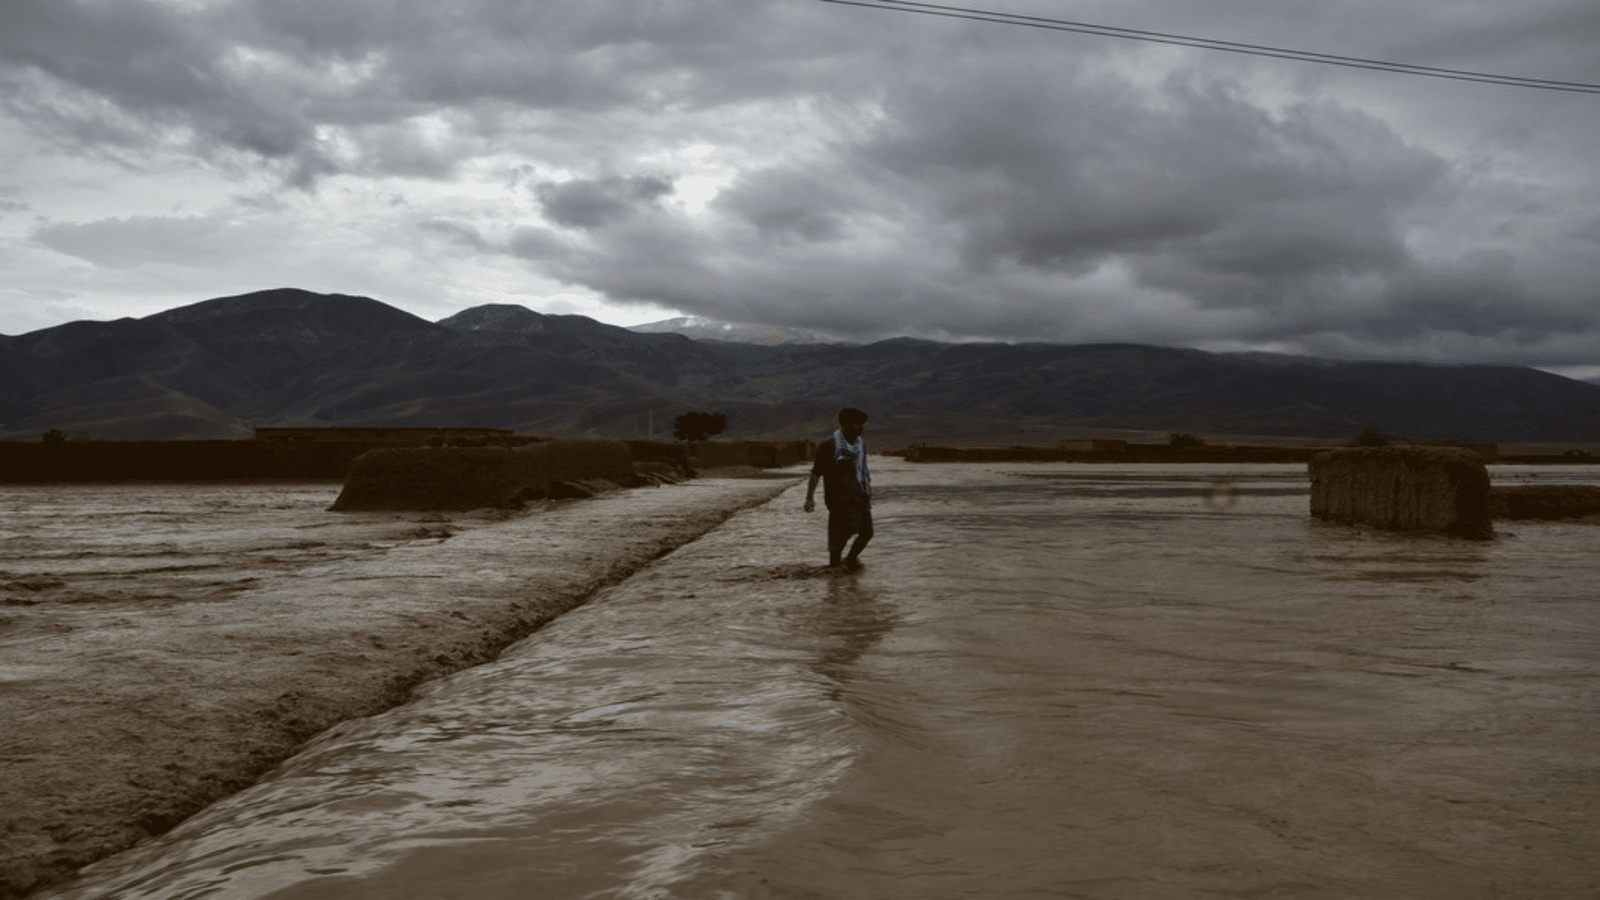 50 lives lost in Afghanistan’s Baghlan floods